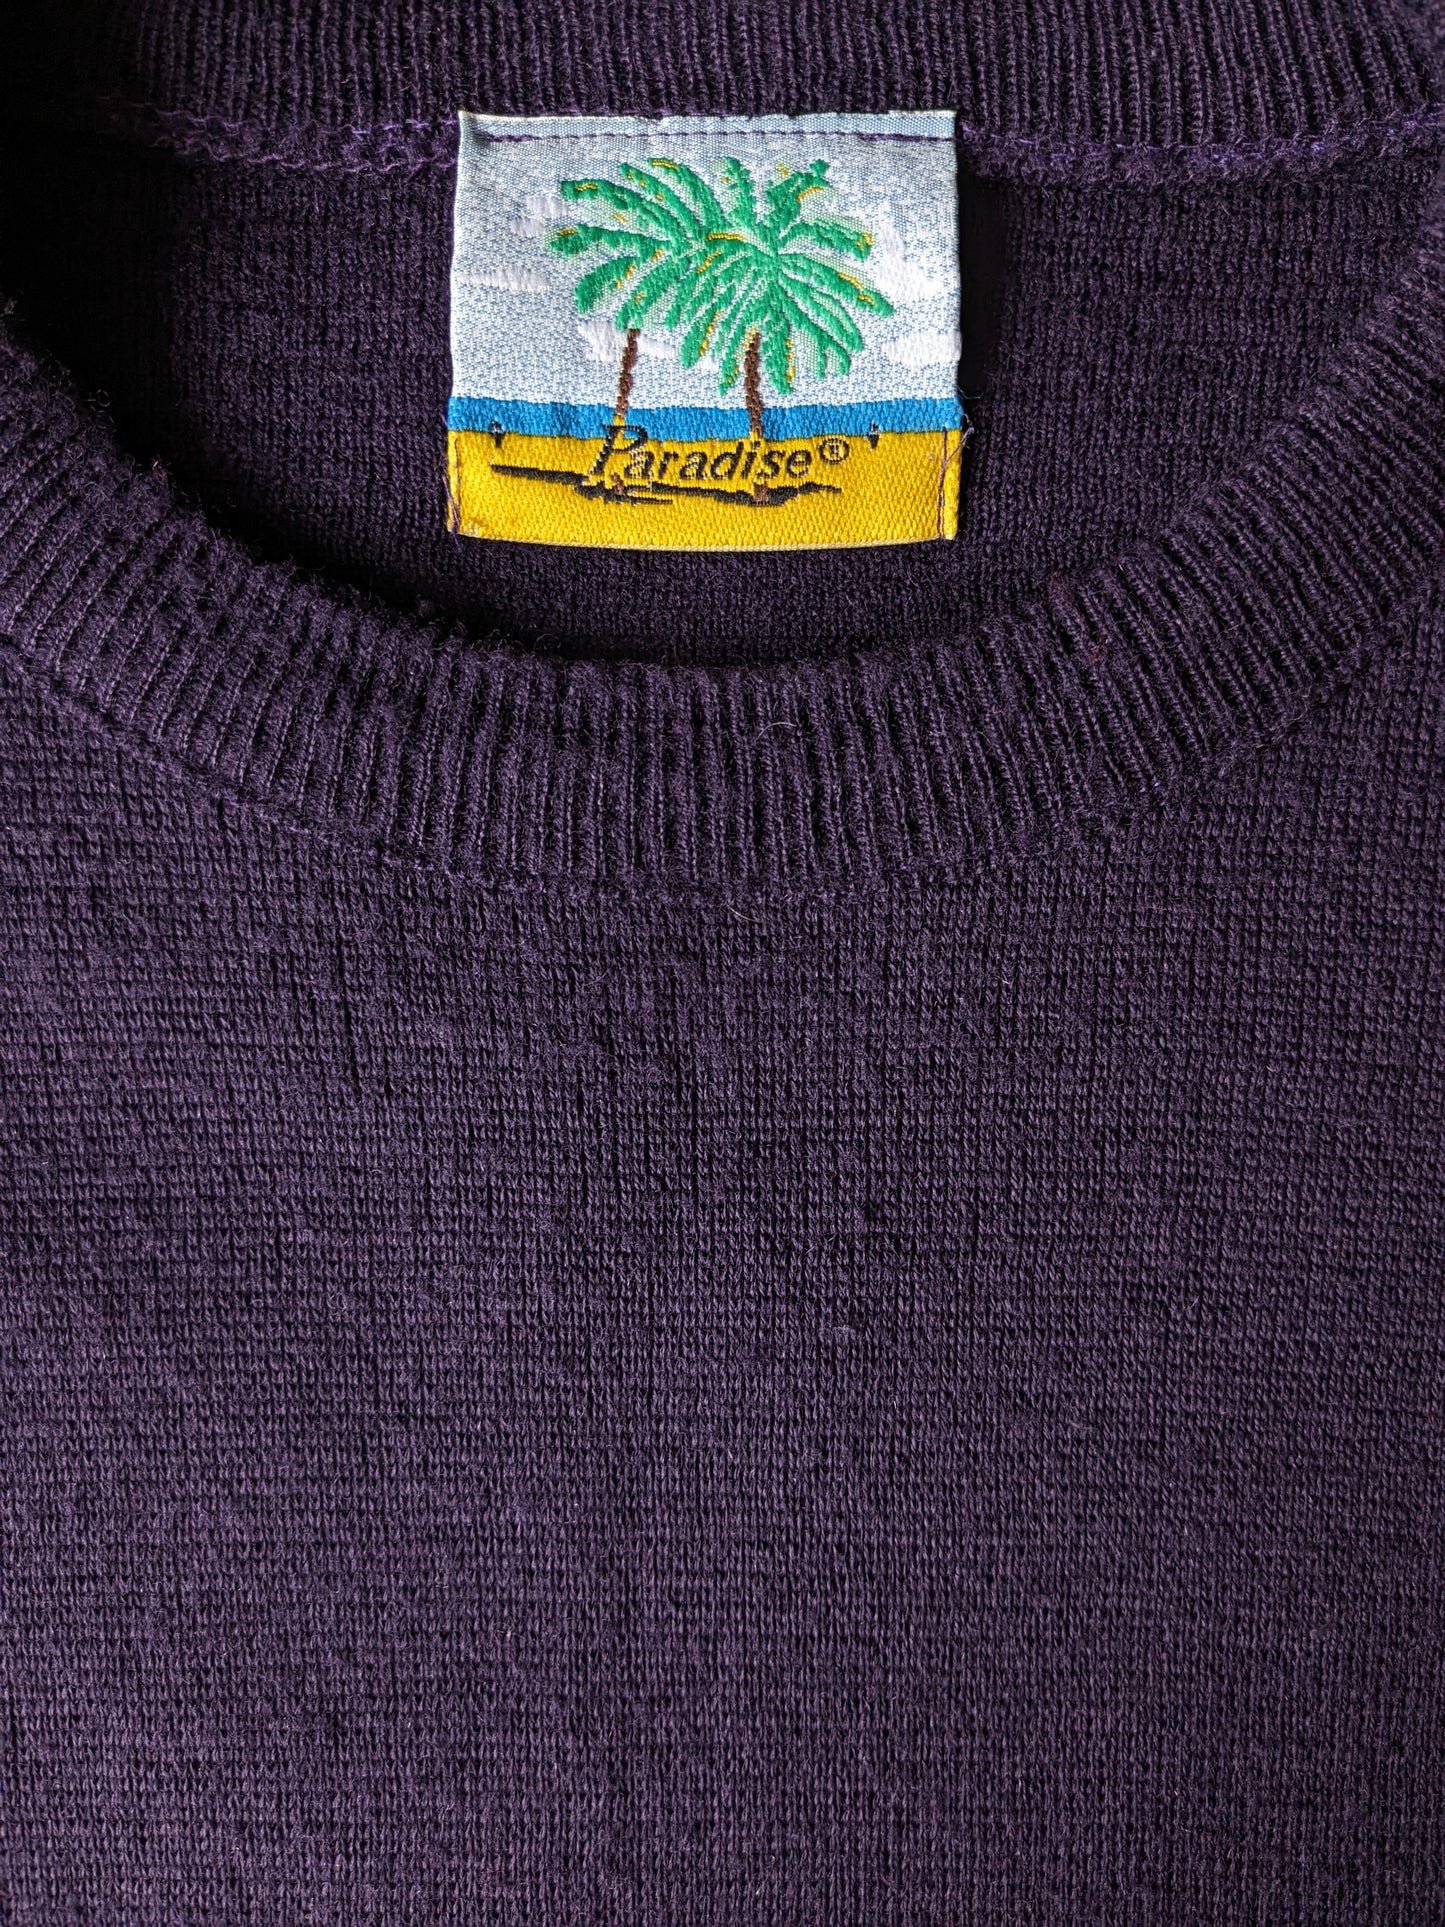 Pull en laine paradisé vintage. Couleur violet foncé. Taille xl. 50% de laine.